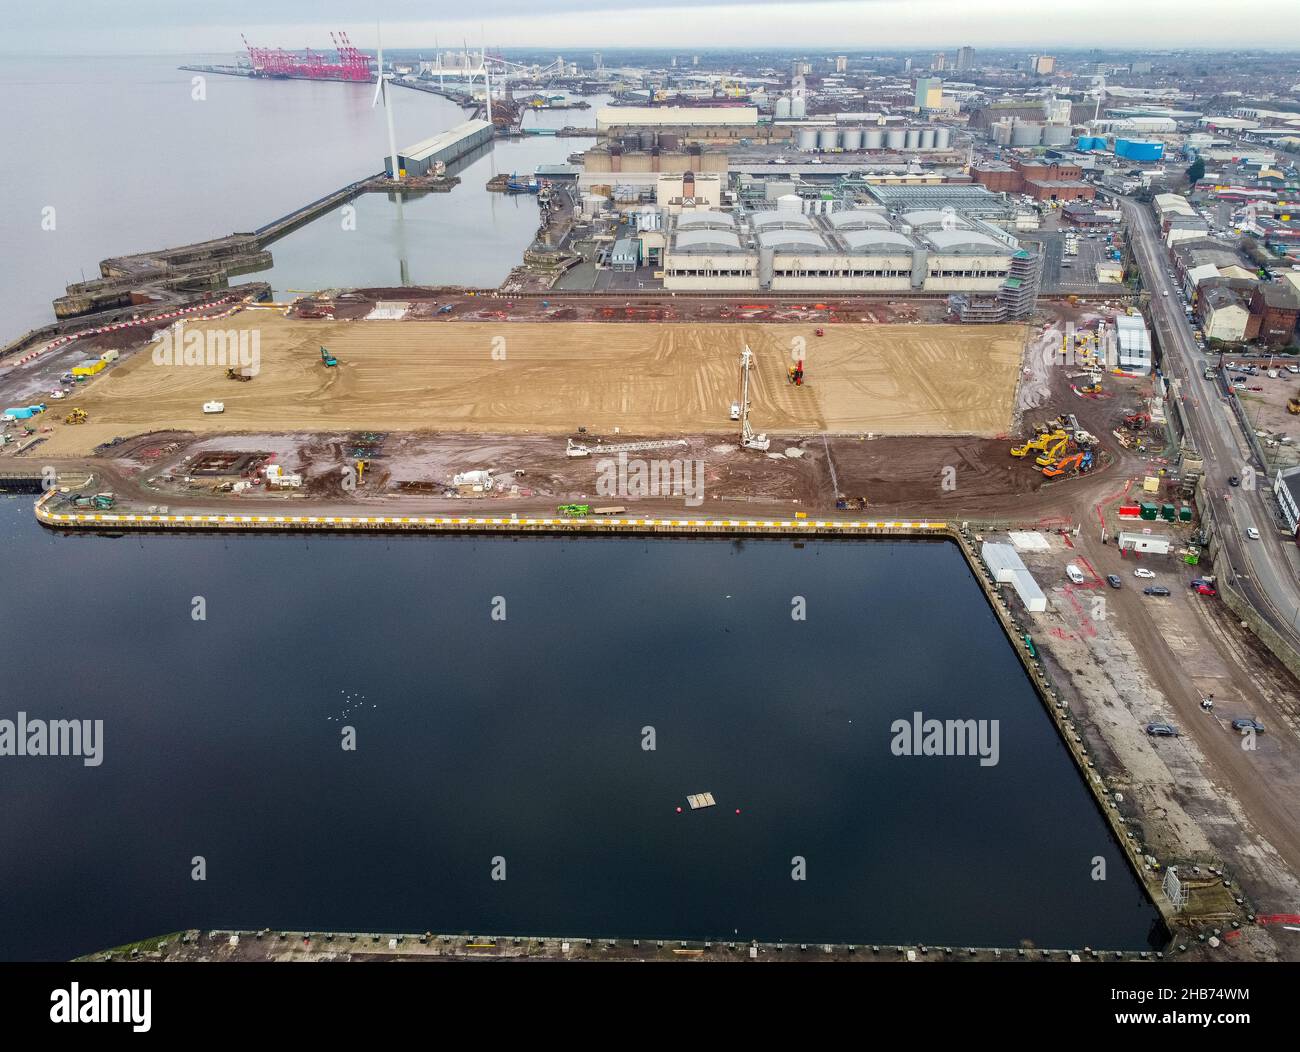 Una vista aérea de los trabajos de construcción en el lugar del nuevo estadio del club de fútbol Everton que se está construyendo en Bramley-Moore Dock. Fecha de la foto: Viernes 17 de diciembre de 2021. Foto de stock